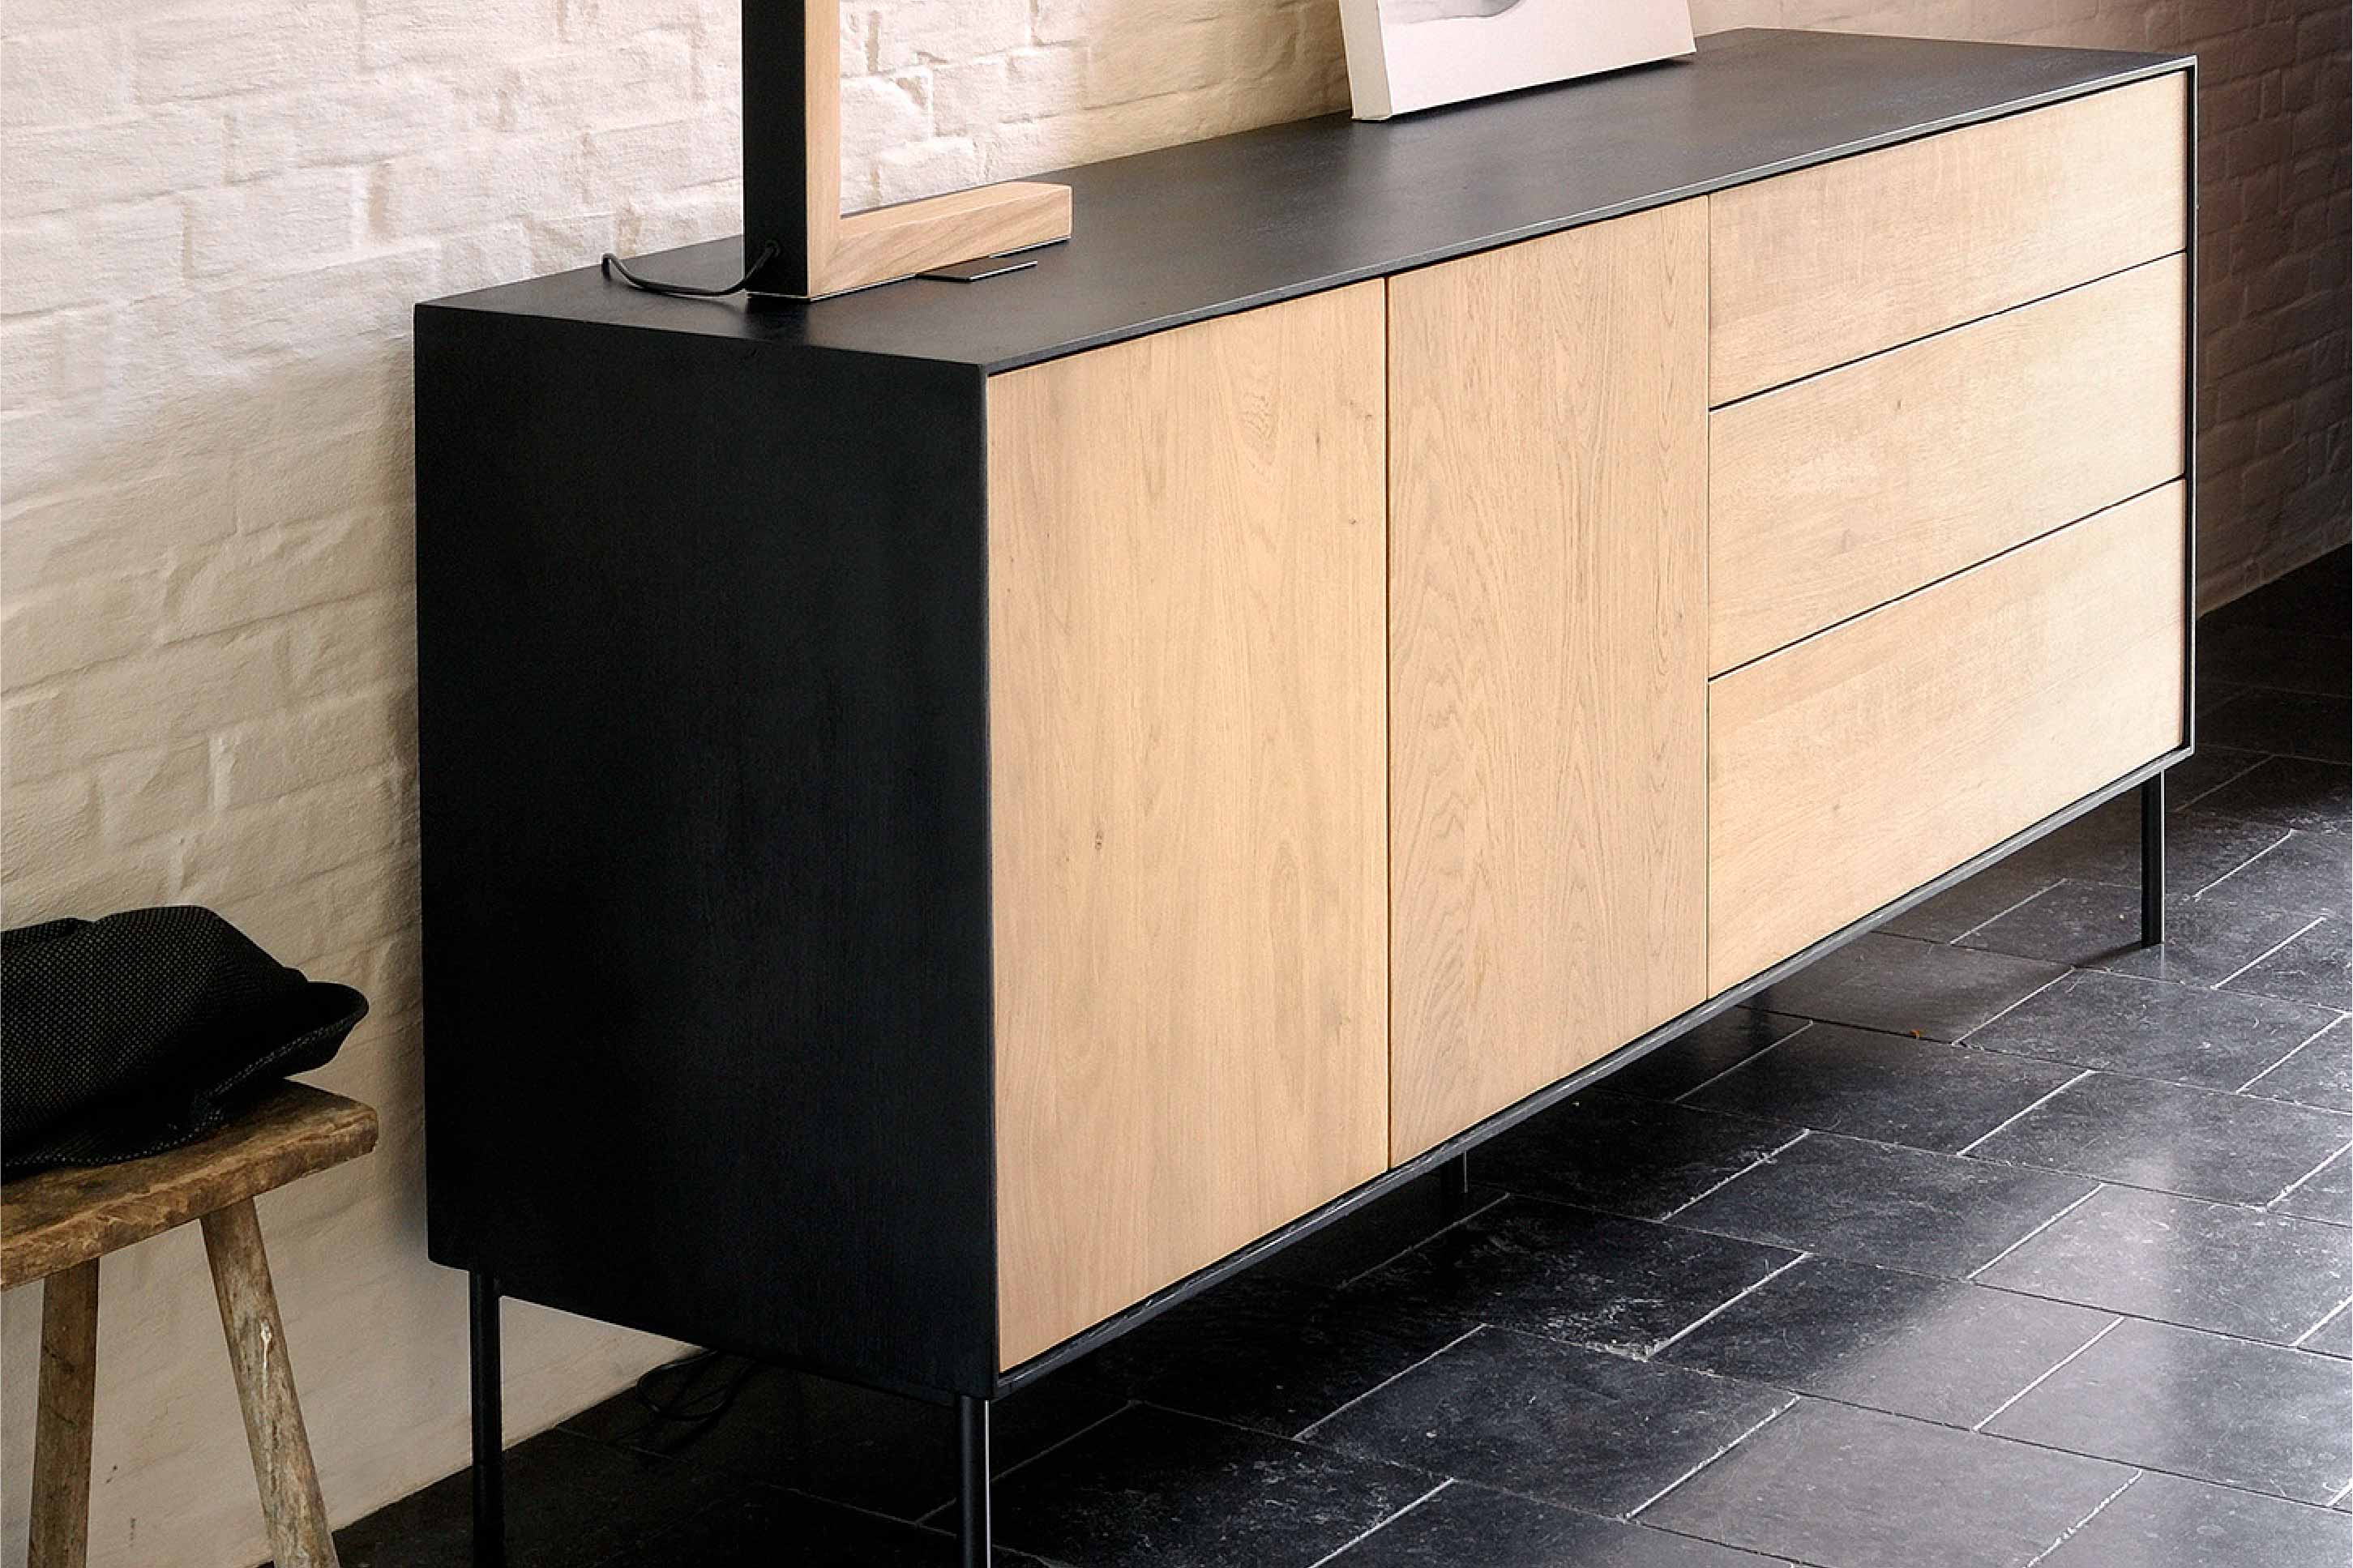 比利時原裝進口實木傢俬 -  收納系列 - Blackbird系列橡木兩門餐具櫃